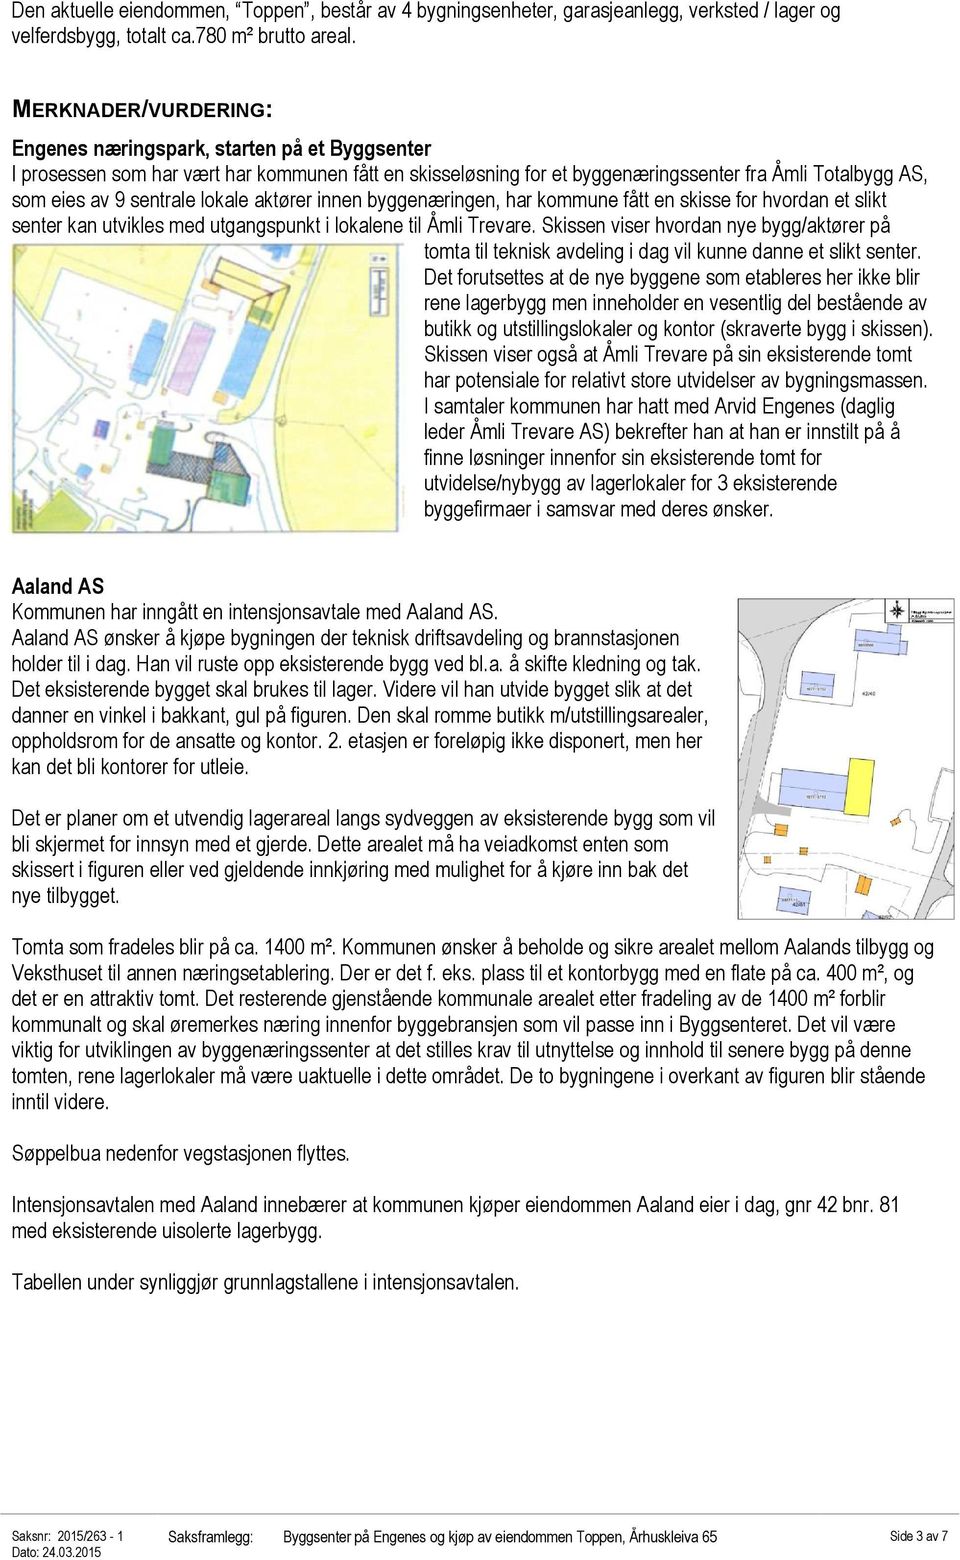 lokale aktører innen byggenæringen, har kommune fått en skisse for hvordan et slikt senter kan utvikles med utgangspunkt i lokalene til Åmli Trevare.